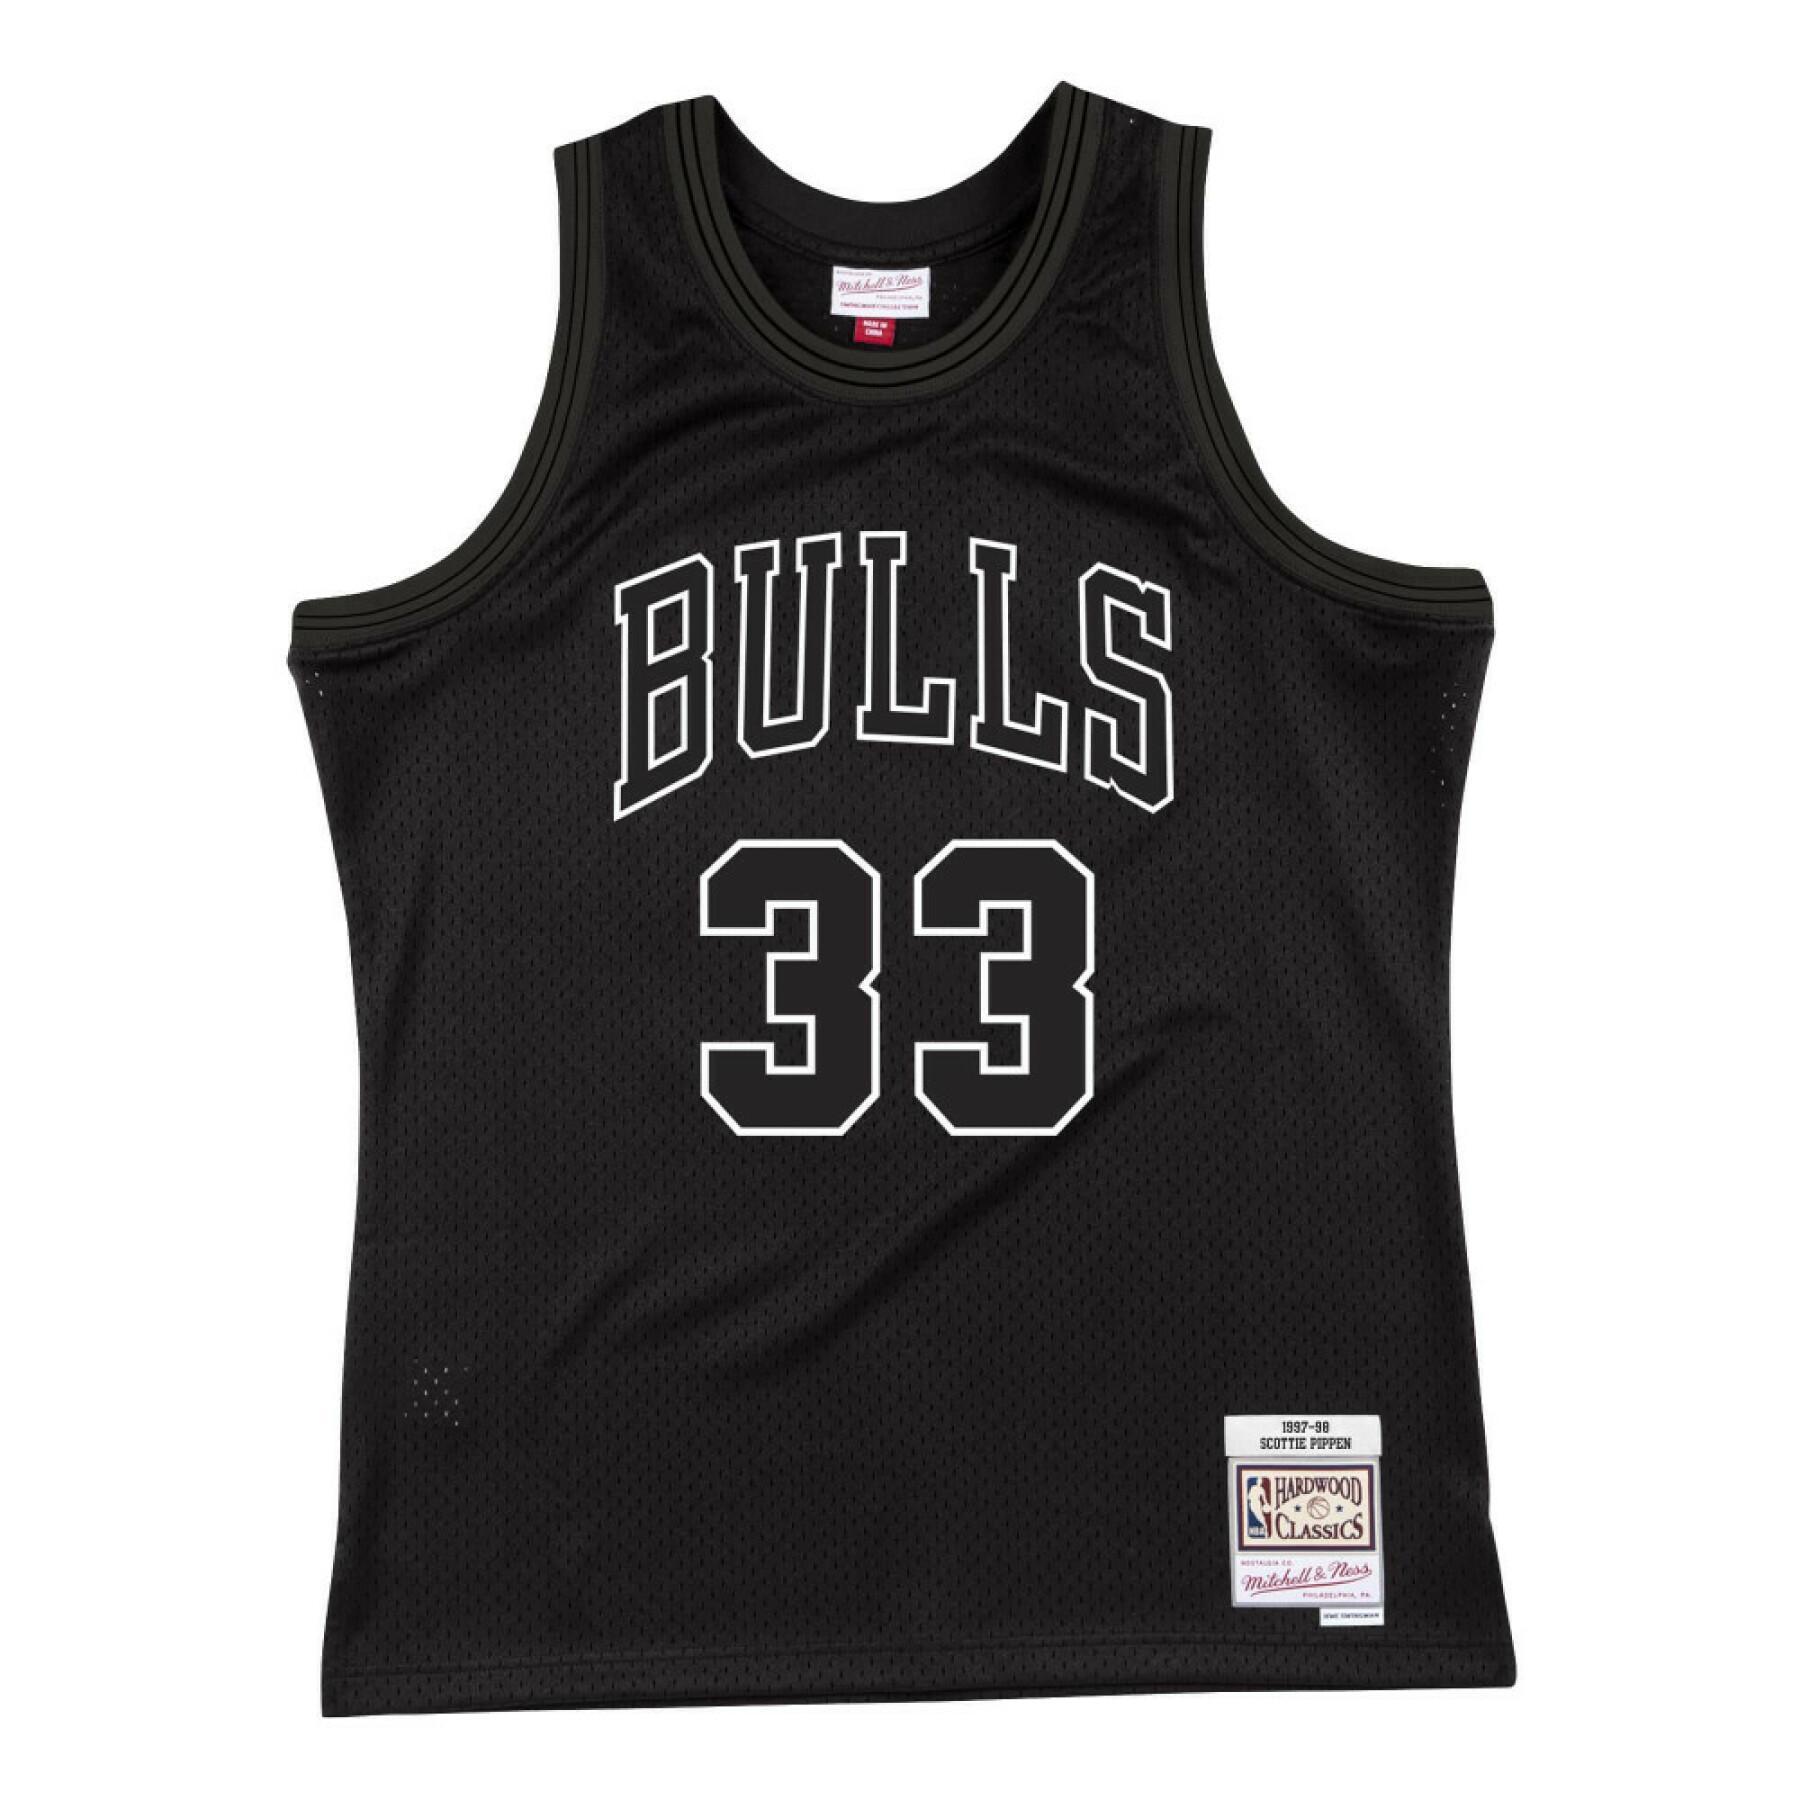 NBA-Trikot scottie pippen chicago bulls '97 white logo